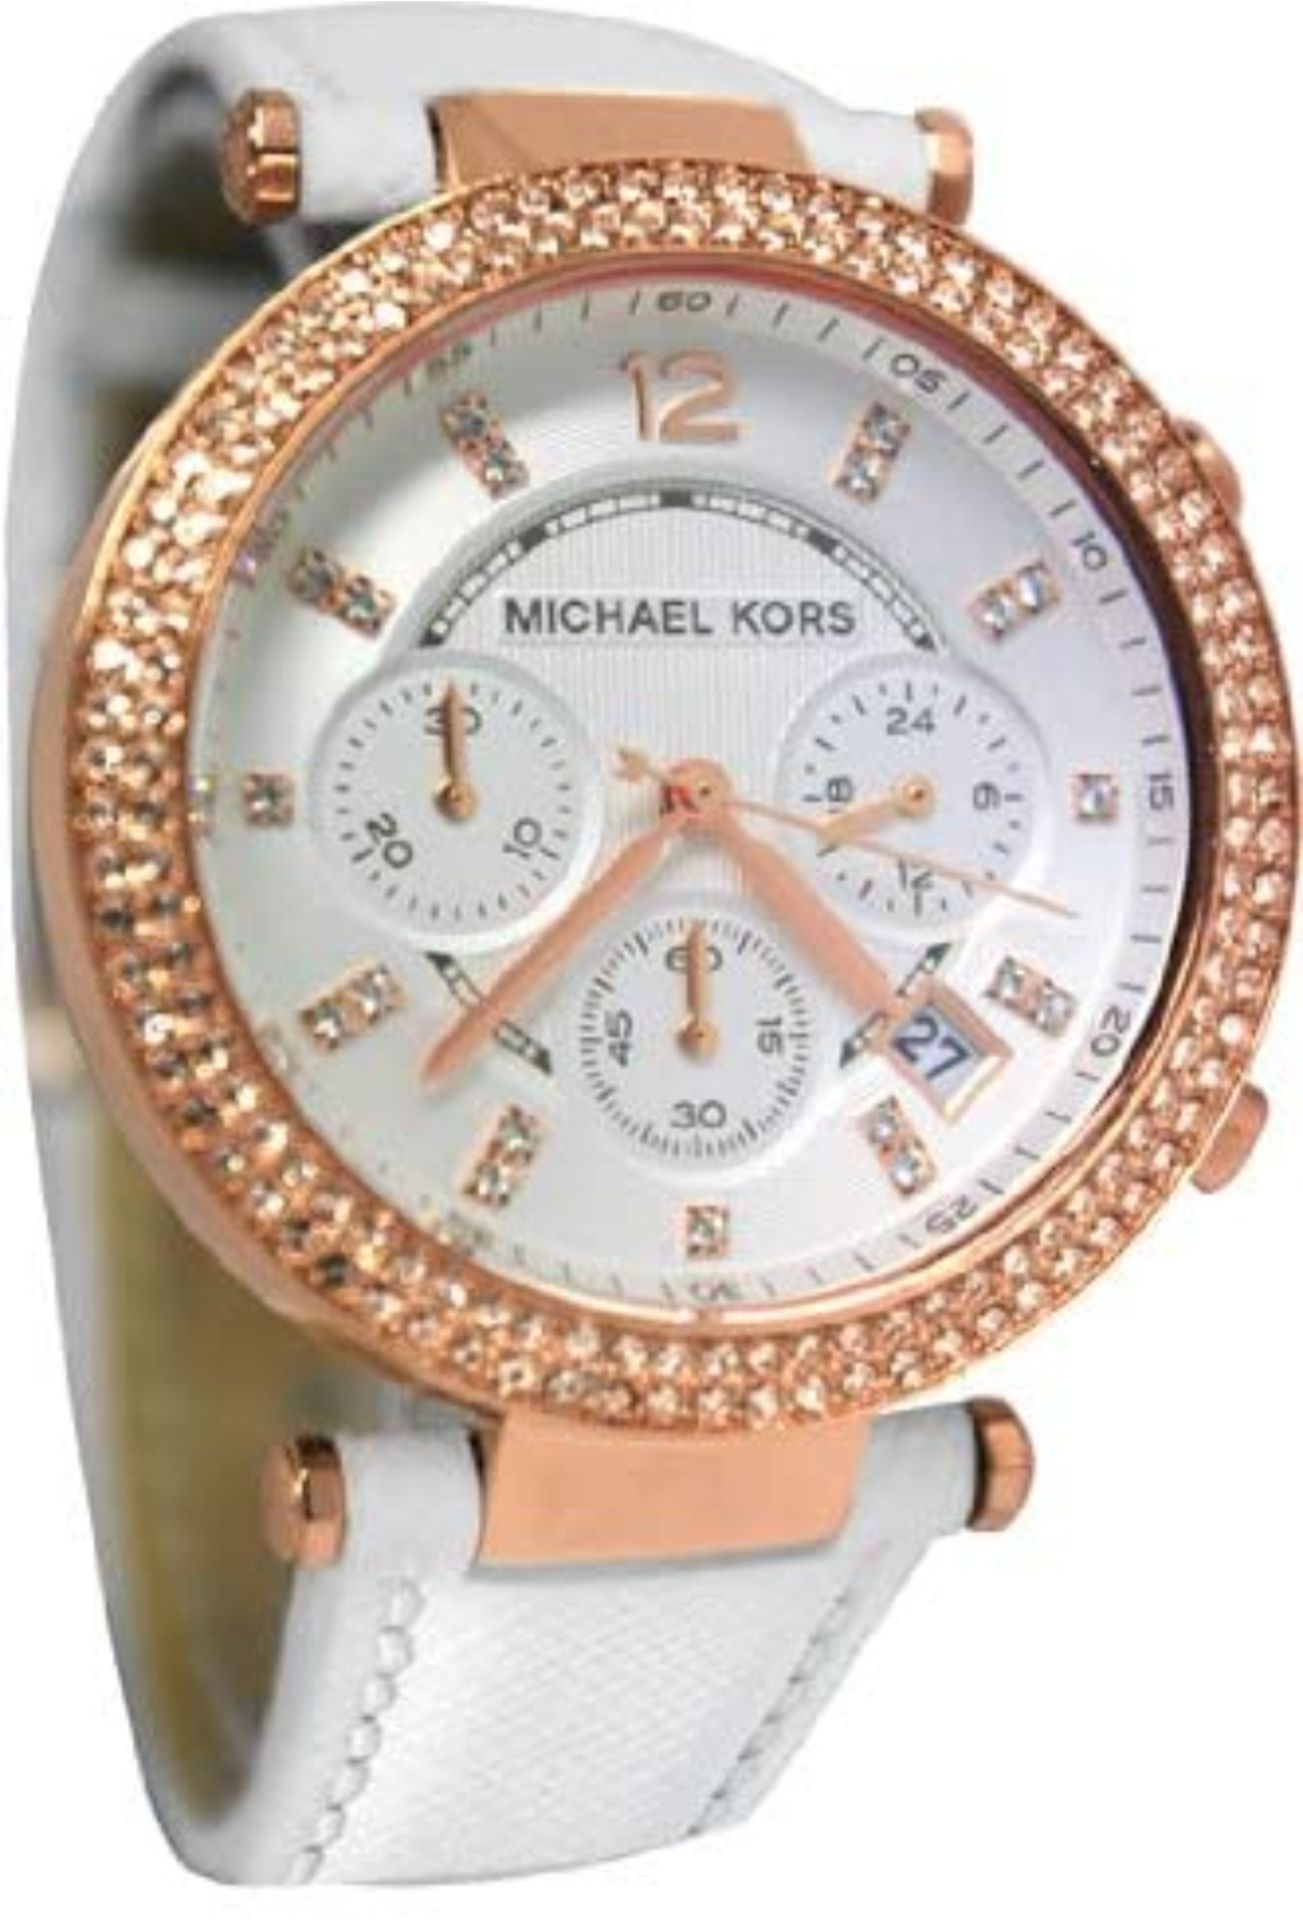 Michael Kors MK2281 Ladies Parker Chronograph Quartz Watch - Image 7 of 10